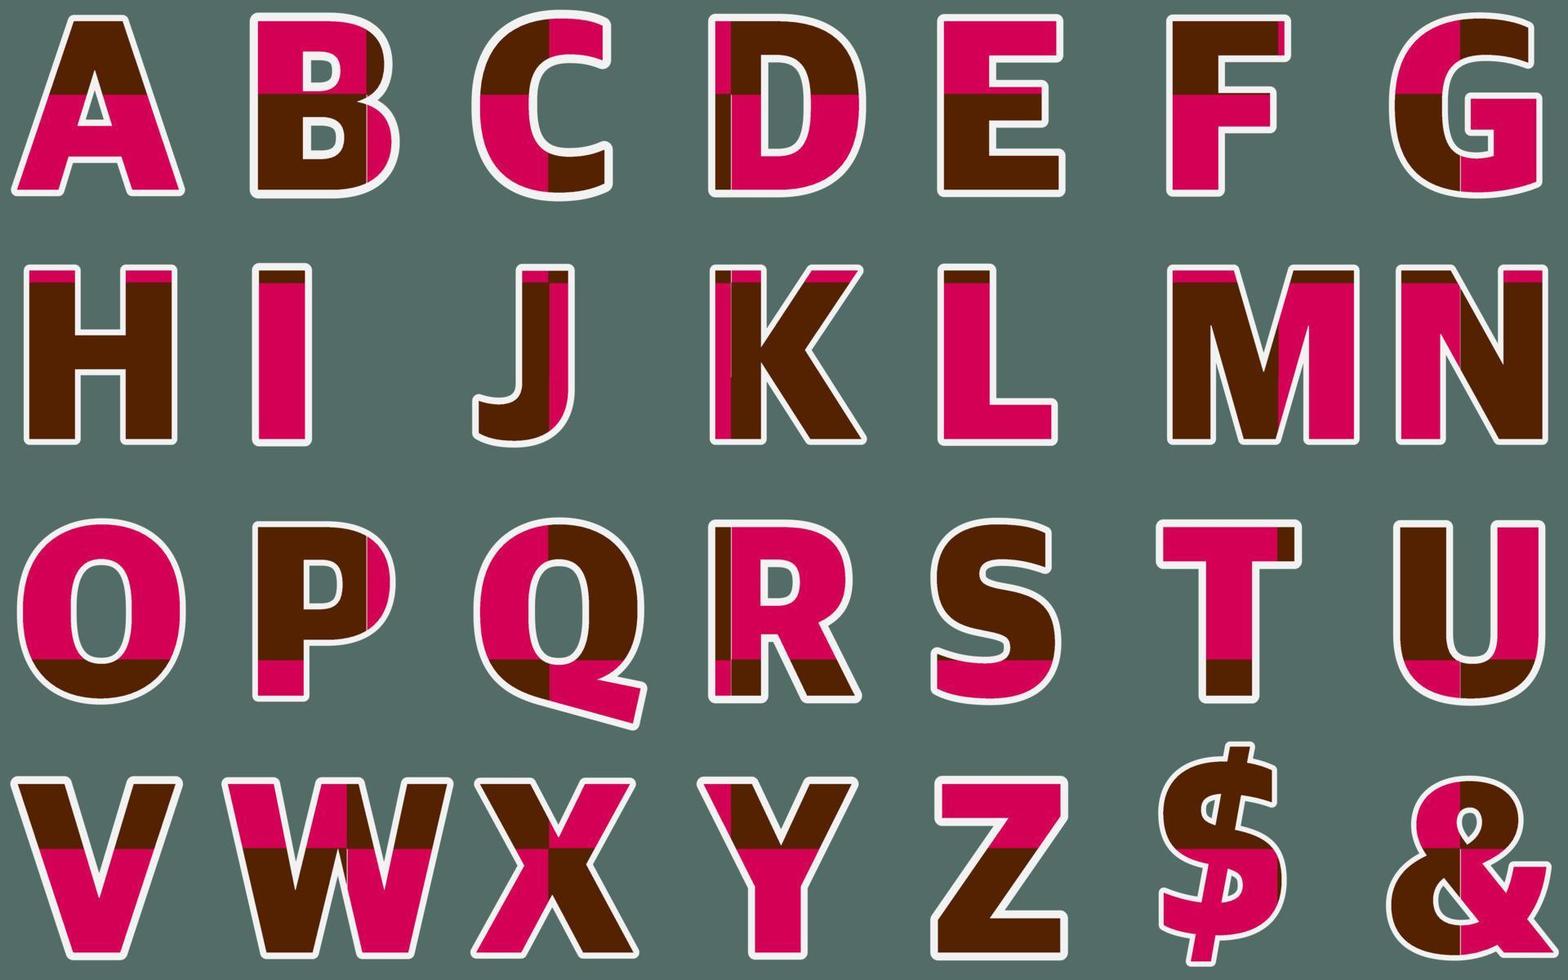 ABC vector alphabet font set vector purple pink white black